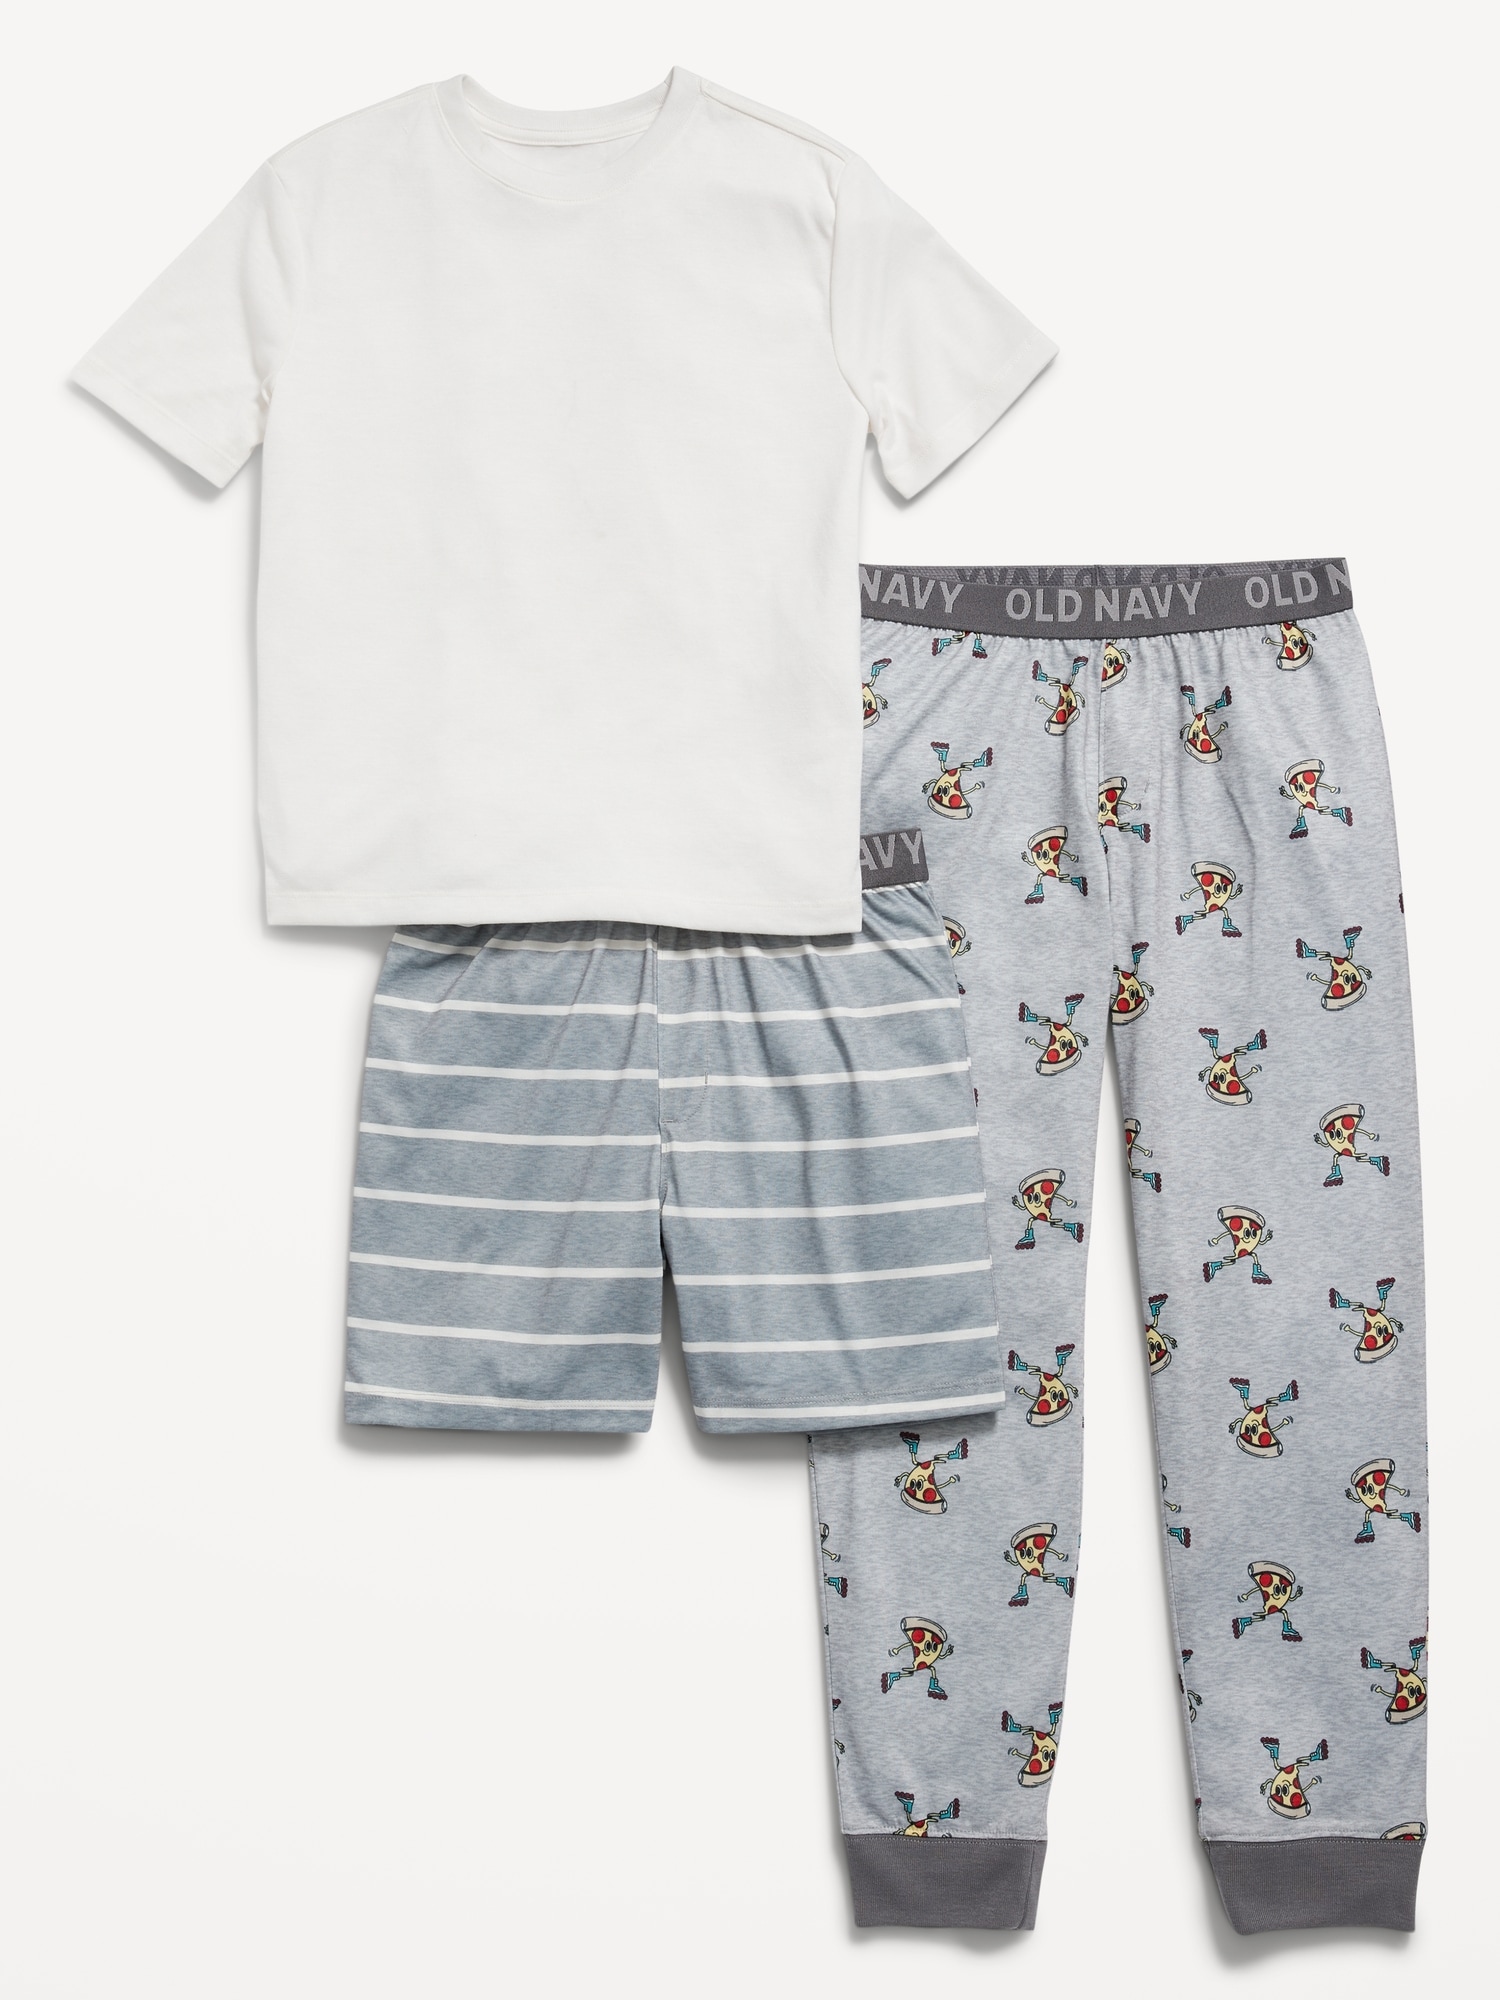 Old Navy 3-Piece Printed Pajama Set for Boys multi. 1